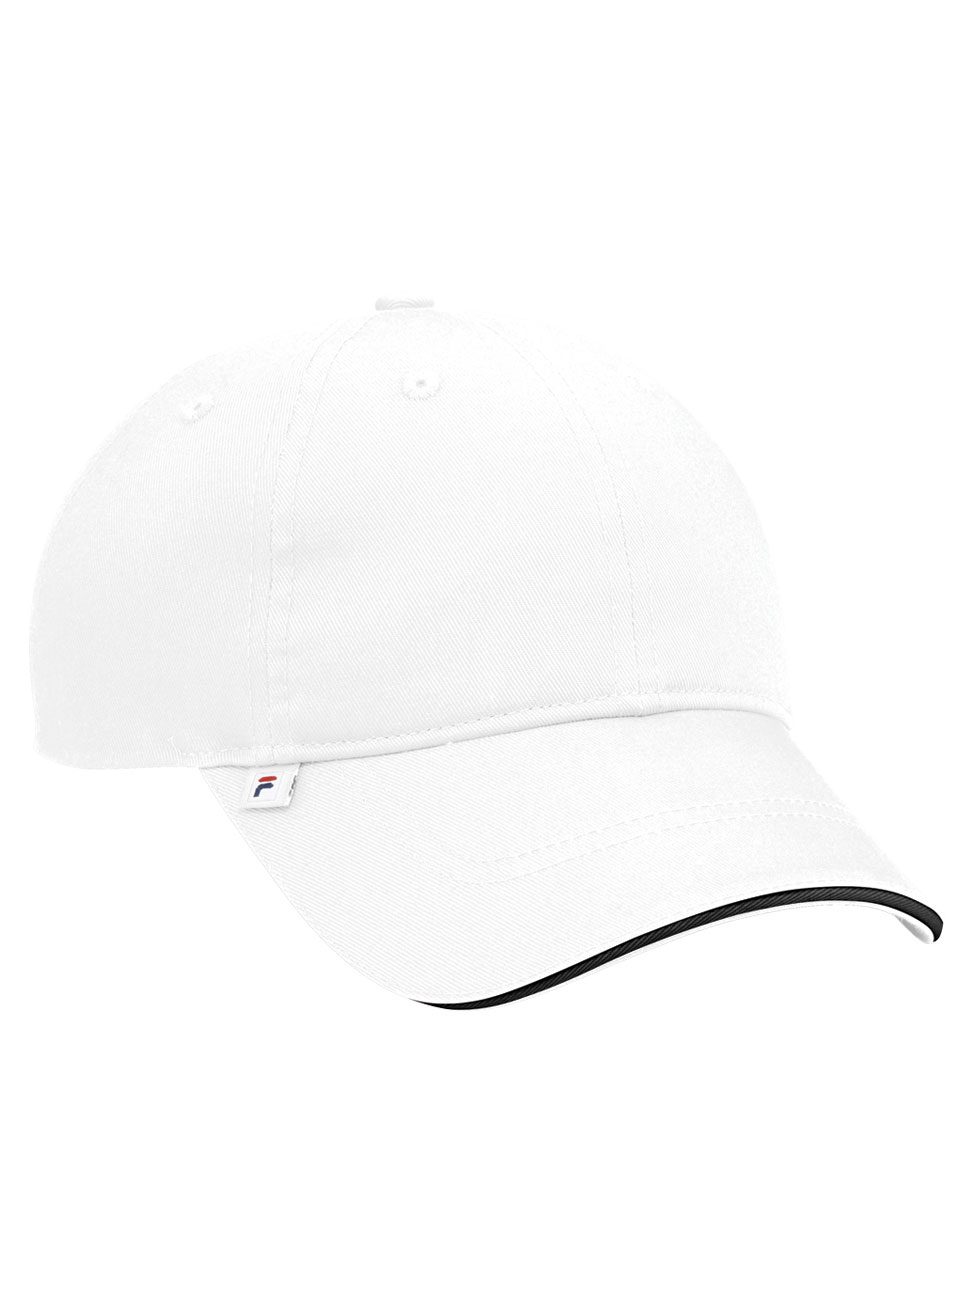 Fila Torino Baseball Hat #FA1010 White